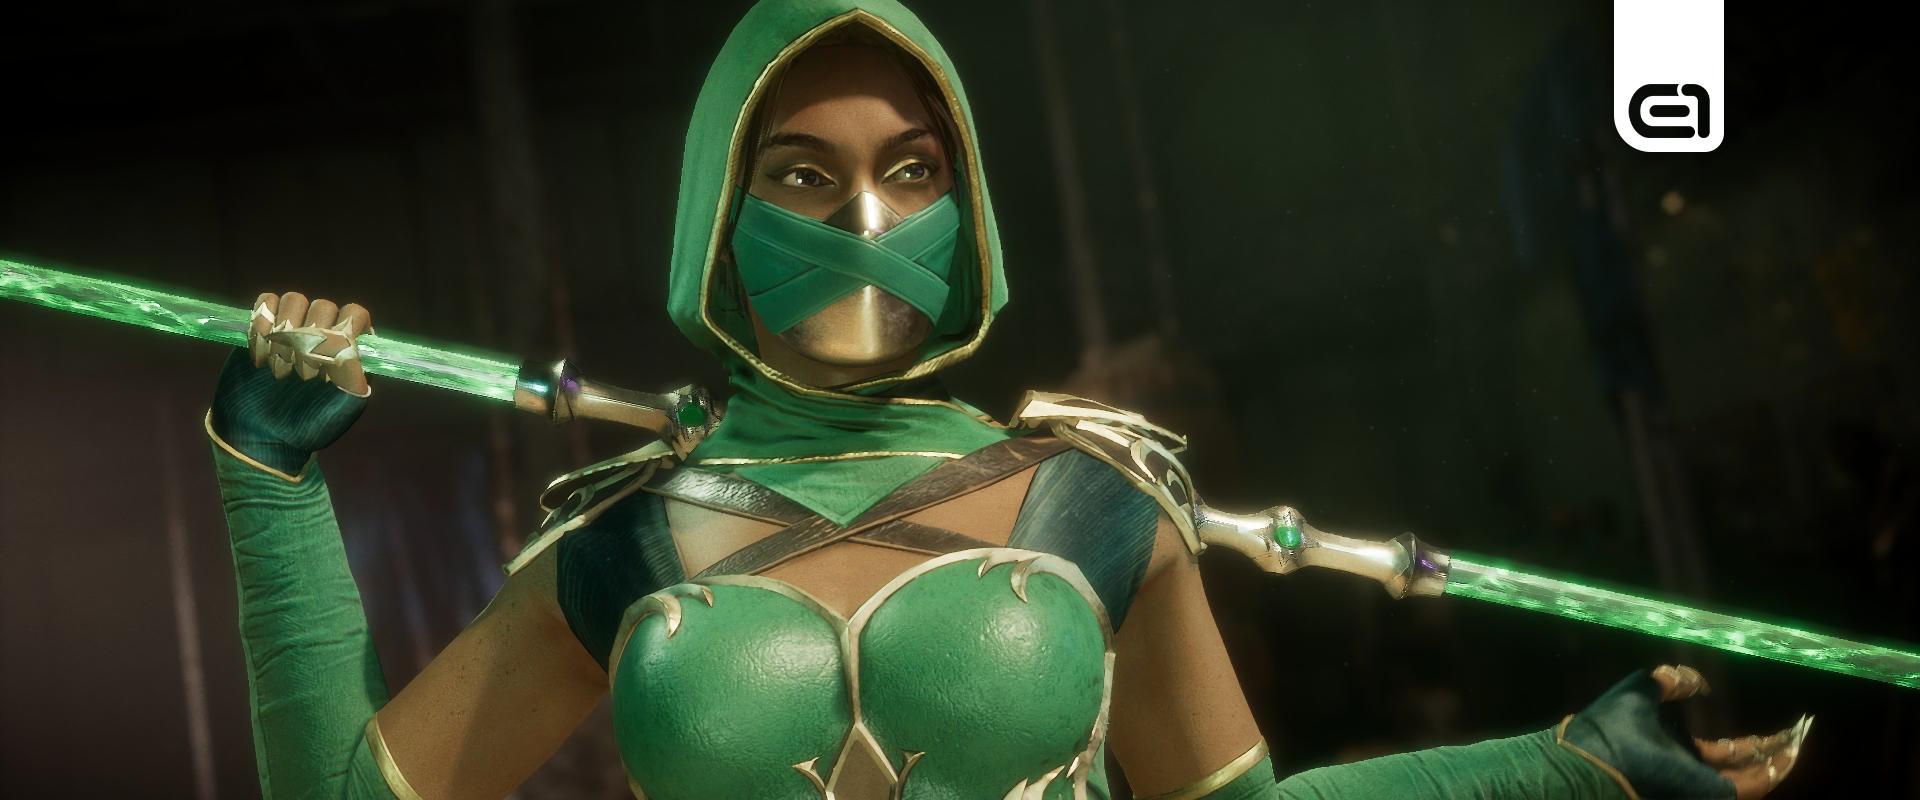 Kiváló színésznőt választottak ki Jade szerepére a Mortal Kombat 2-ben